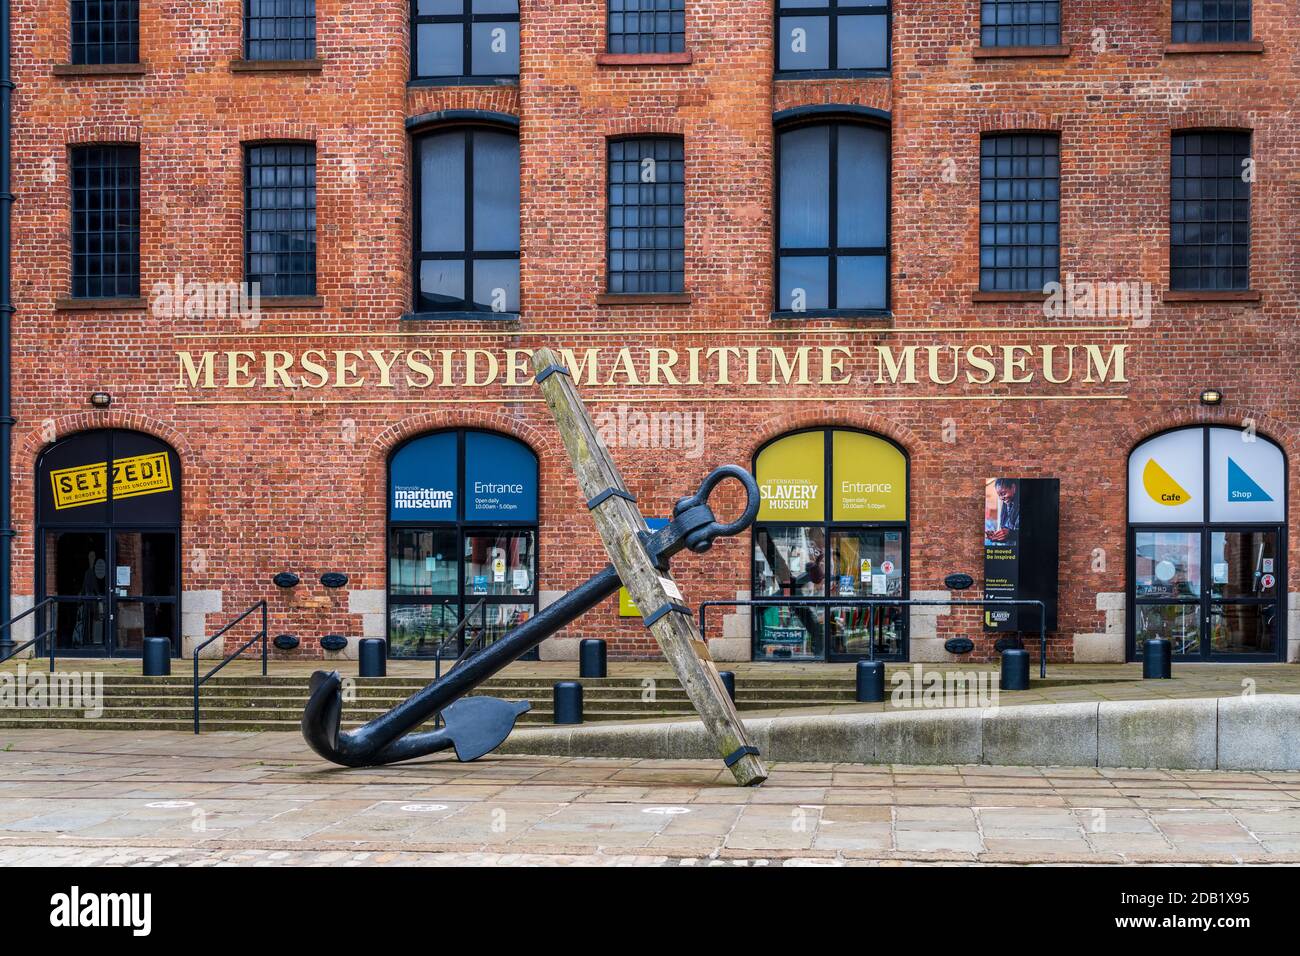 Merseyside Maritime Museum Liverpool en el Royal Albert Docks. Parte de la costa de Liverpool. Establecido en 1984 después de la apertura de un juicio en 1980. Foto de stock